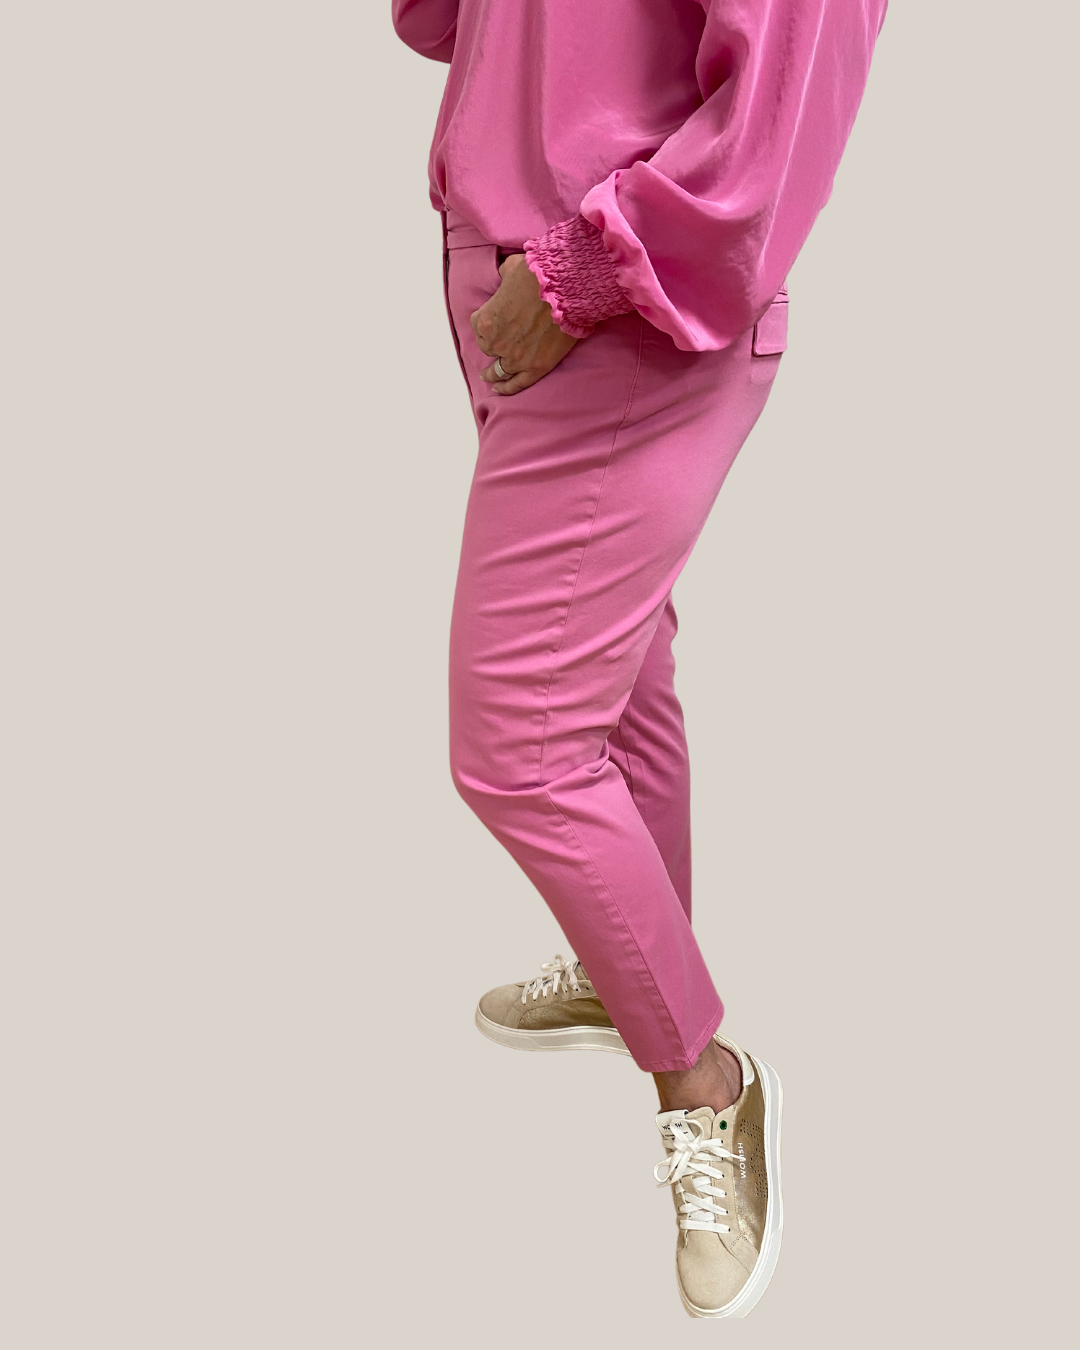 verkürzte Baumwoll-Stretch Hose in pink von Riani - grosse Grössen - deboerplus